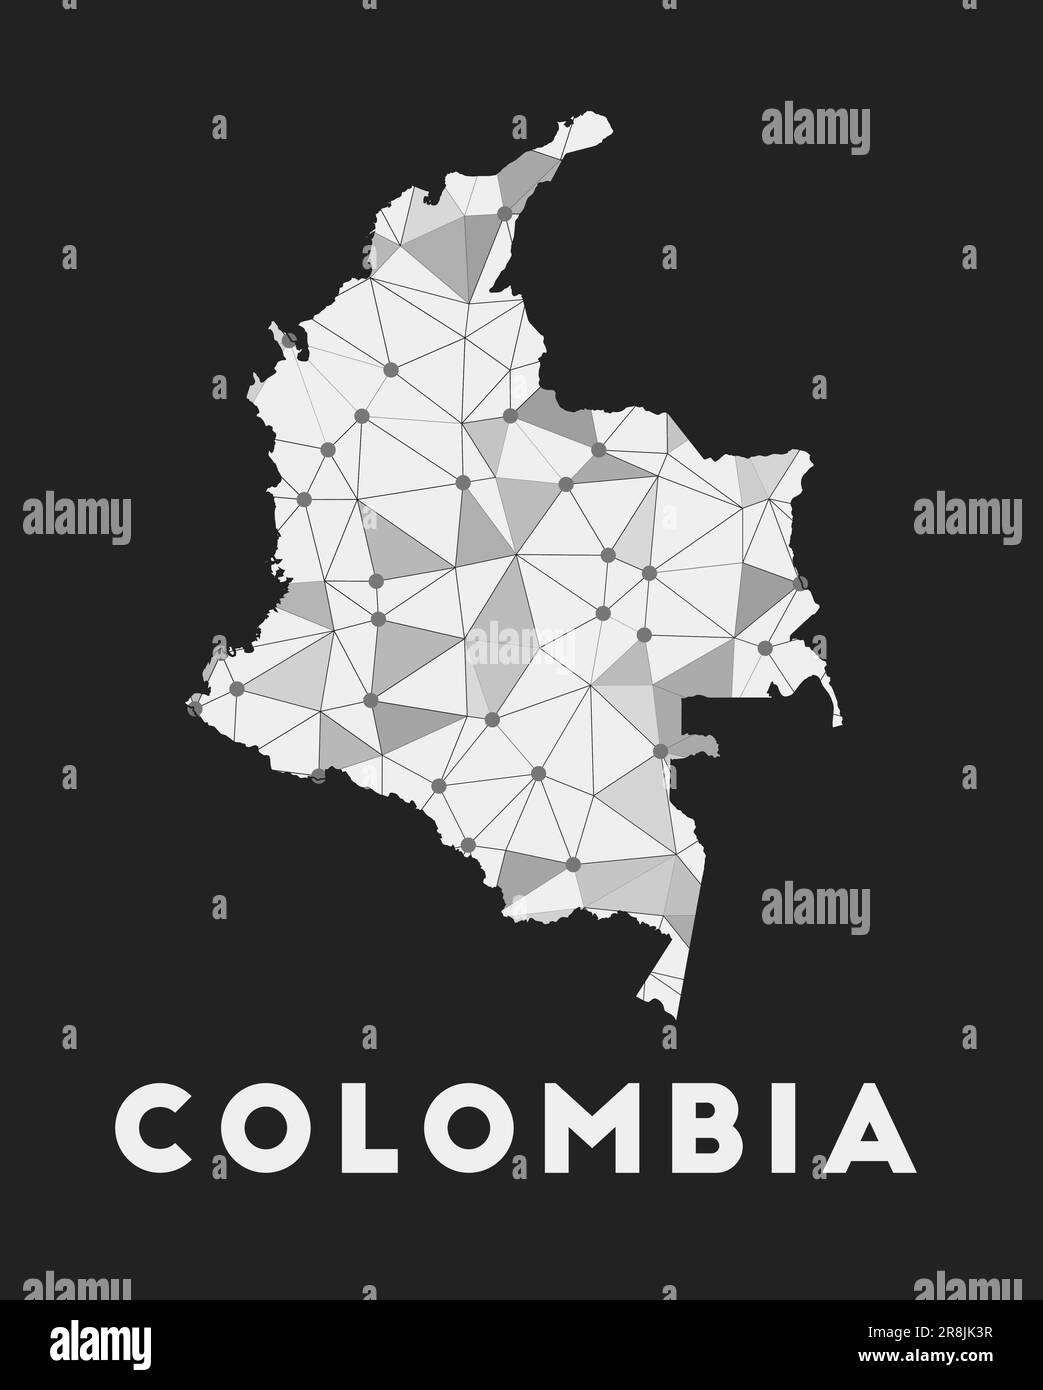 Colombie - carte du réseau de communication du pays. Décoration géométrique tendance Colombie sur fond sombre. Technologie, Internet, réseau, télécommunications Illustration de Vecteur